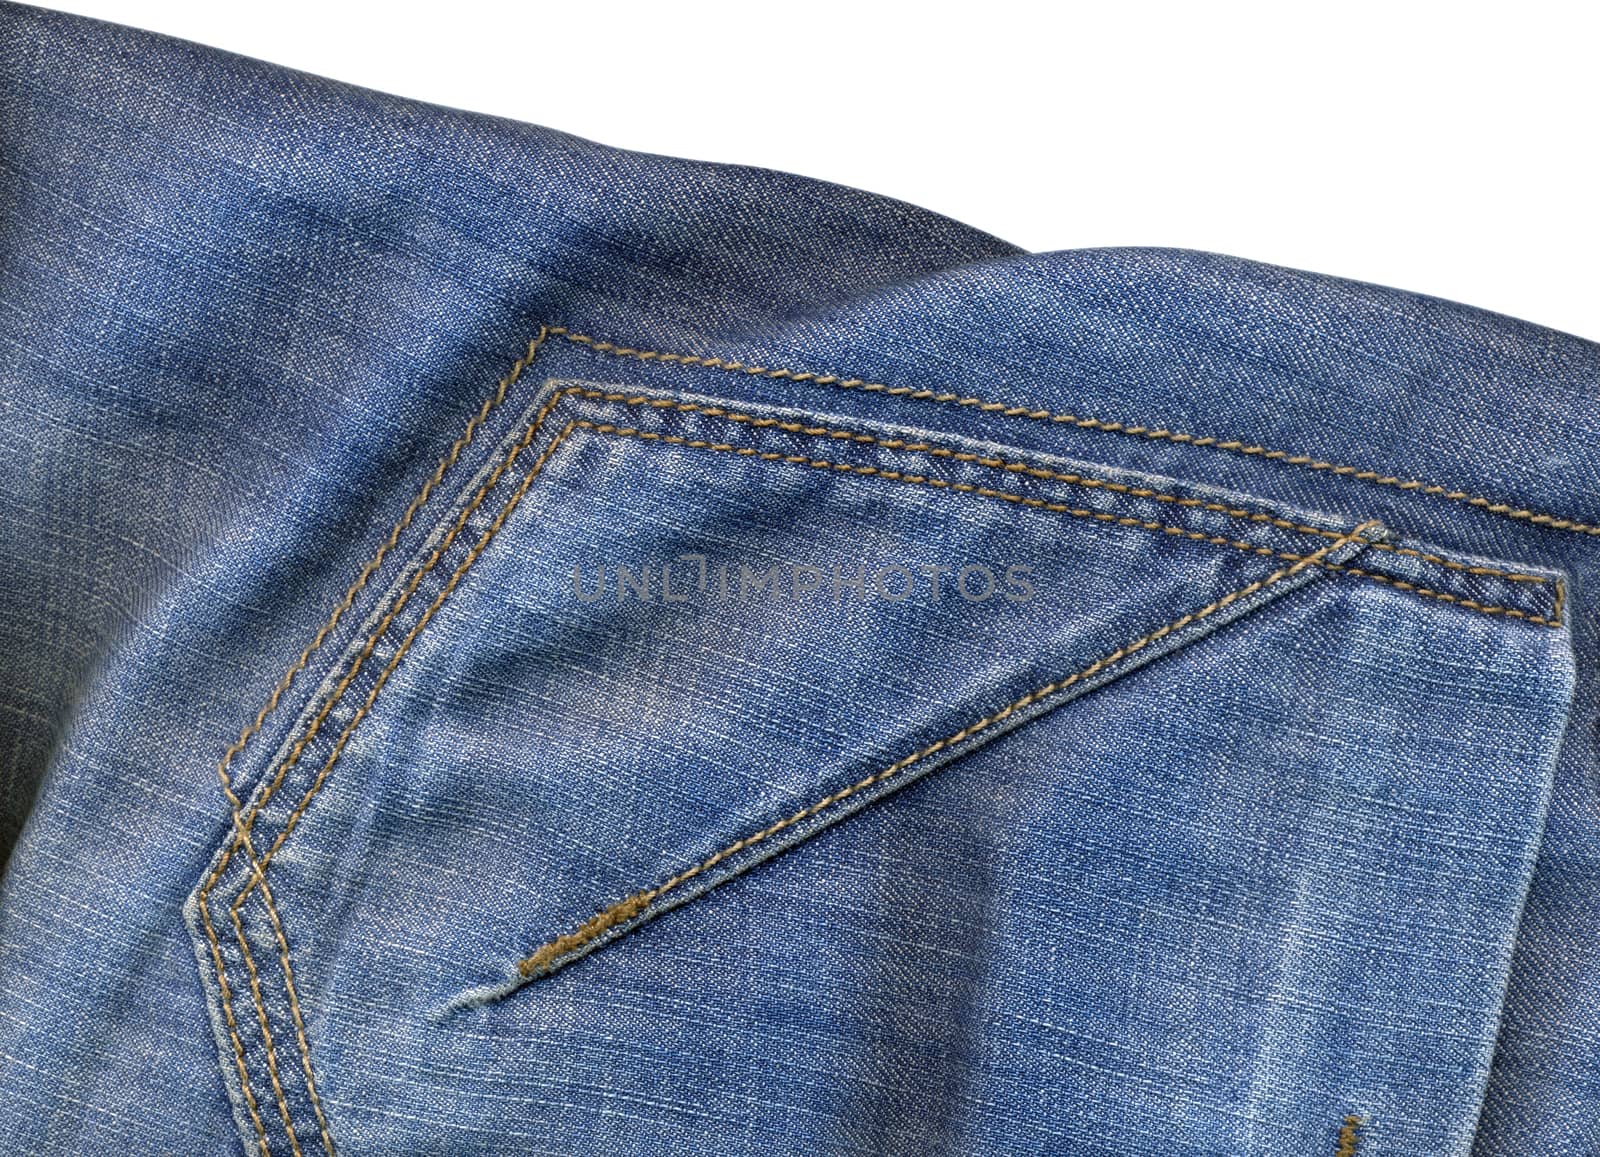 jeans texture by Venakr